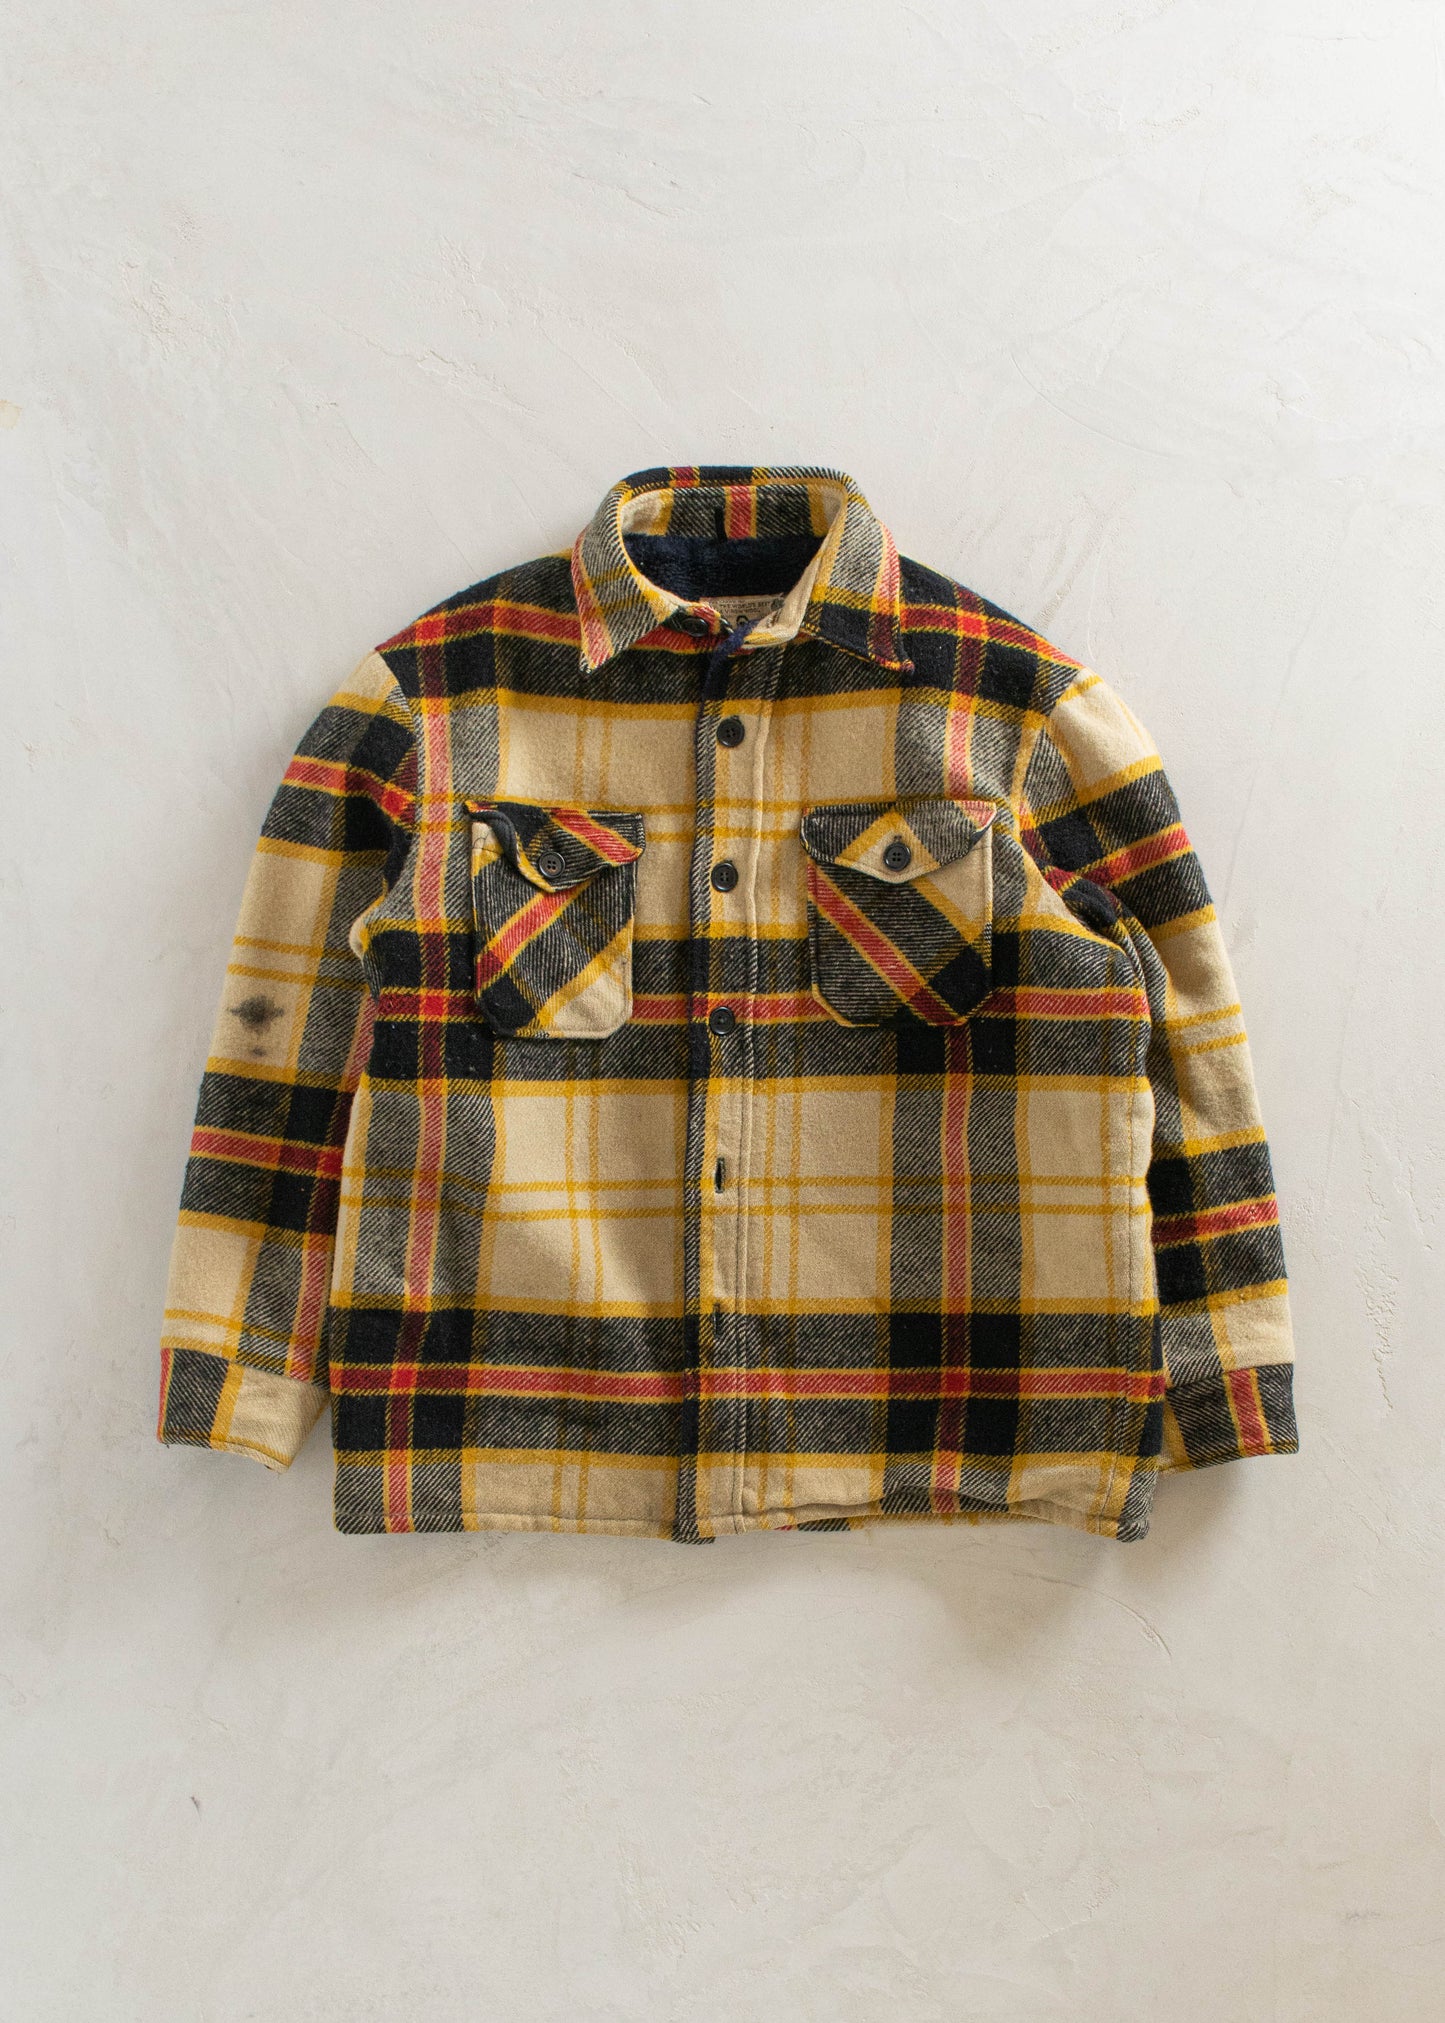 1970s Woolrich Wool Flannel Jacket Size M/L